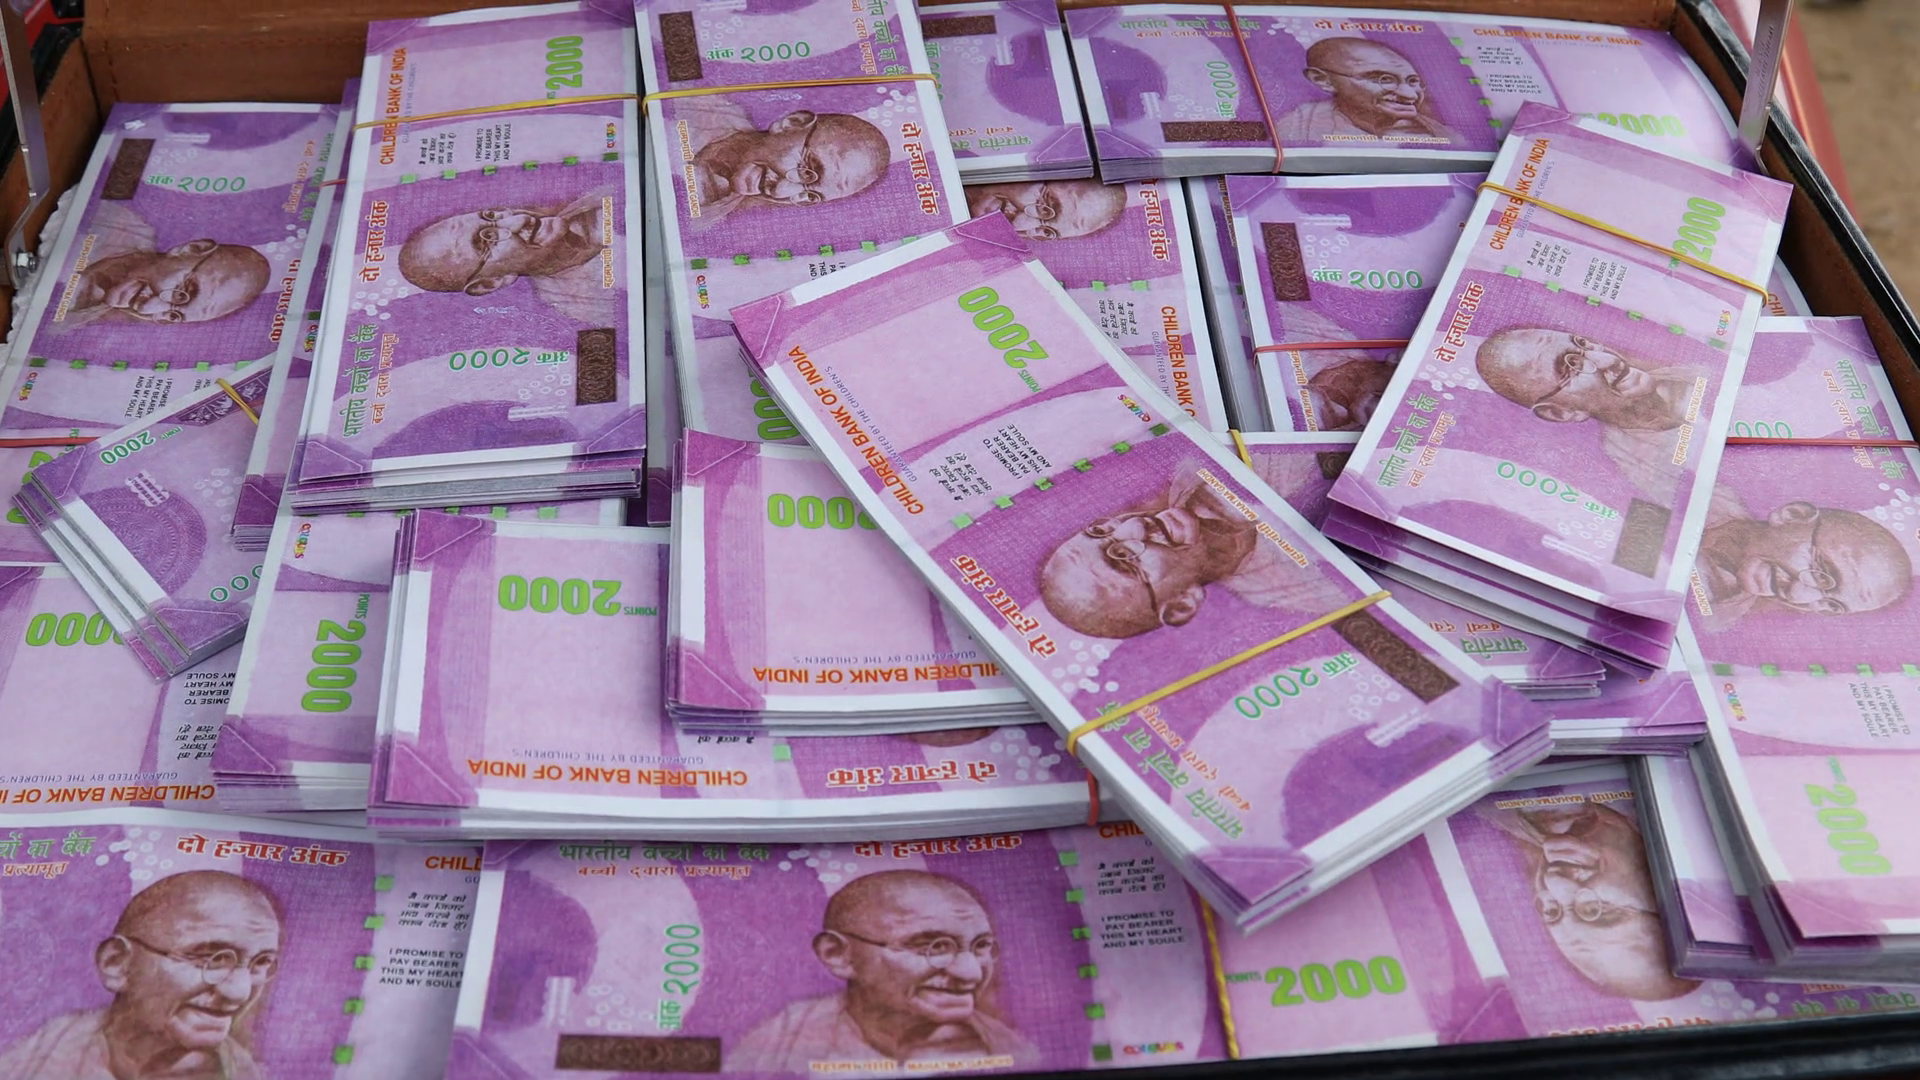 denaro indiano wallpaper hd,contanti,i soldi,banconota,rosa,carta